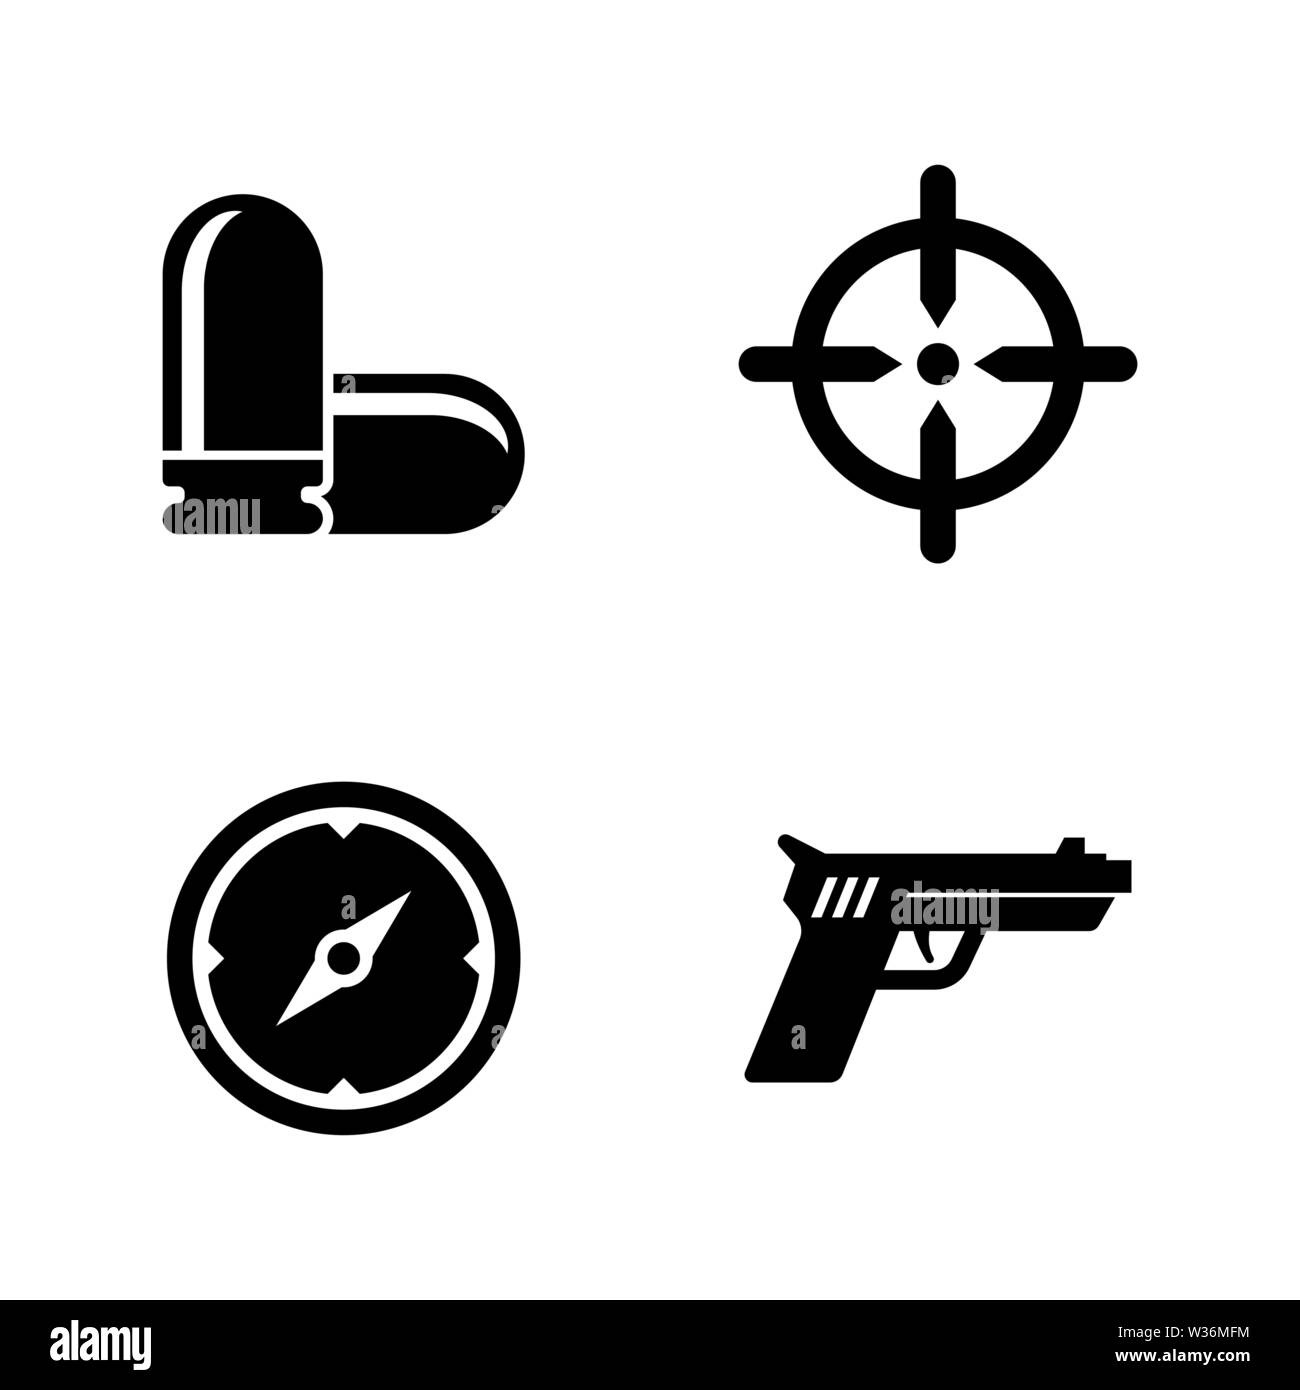 Pistolenschießen, Waffe. Einfache ergänzende Vector Icons Set für Video, Mobile Anwendungen, Websites, Print Projekte und ihre Gestaltung. Pistolenschießen, Gun Symbol Bla Stock Vektor